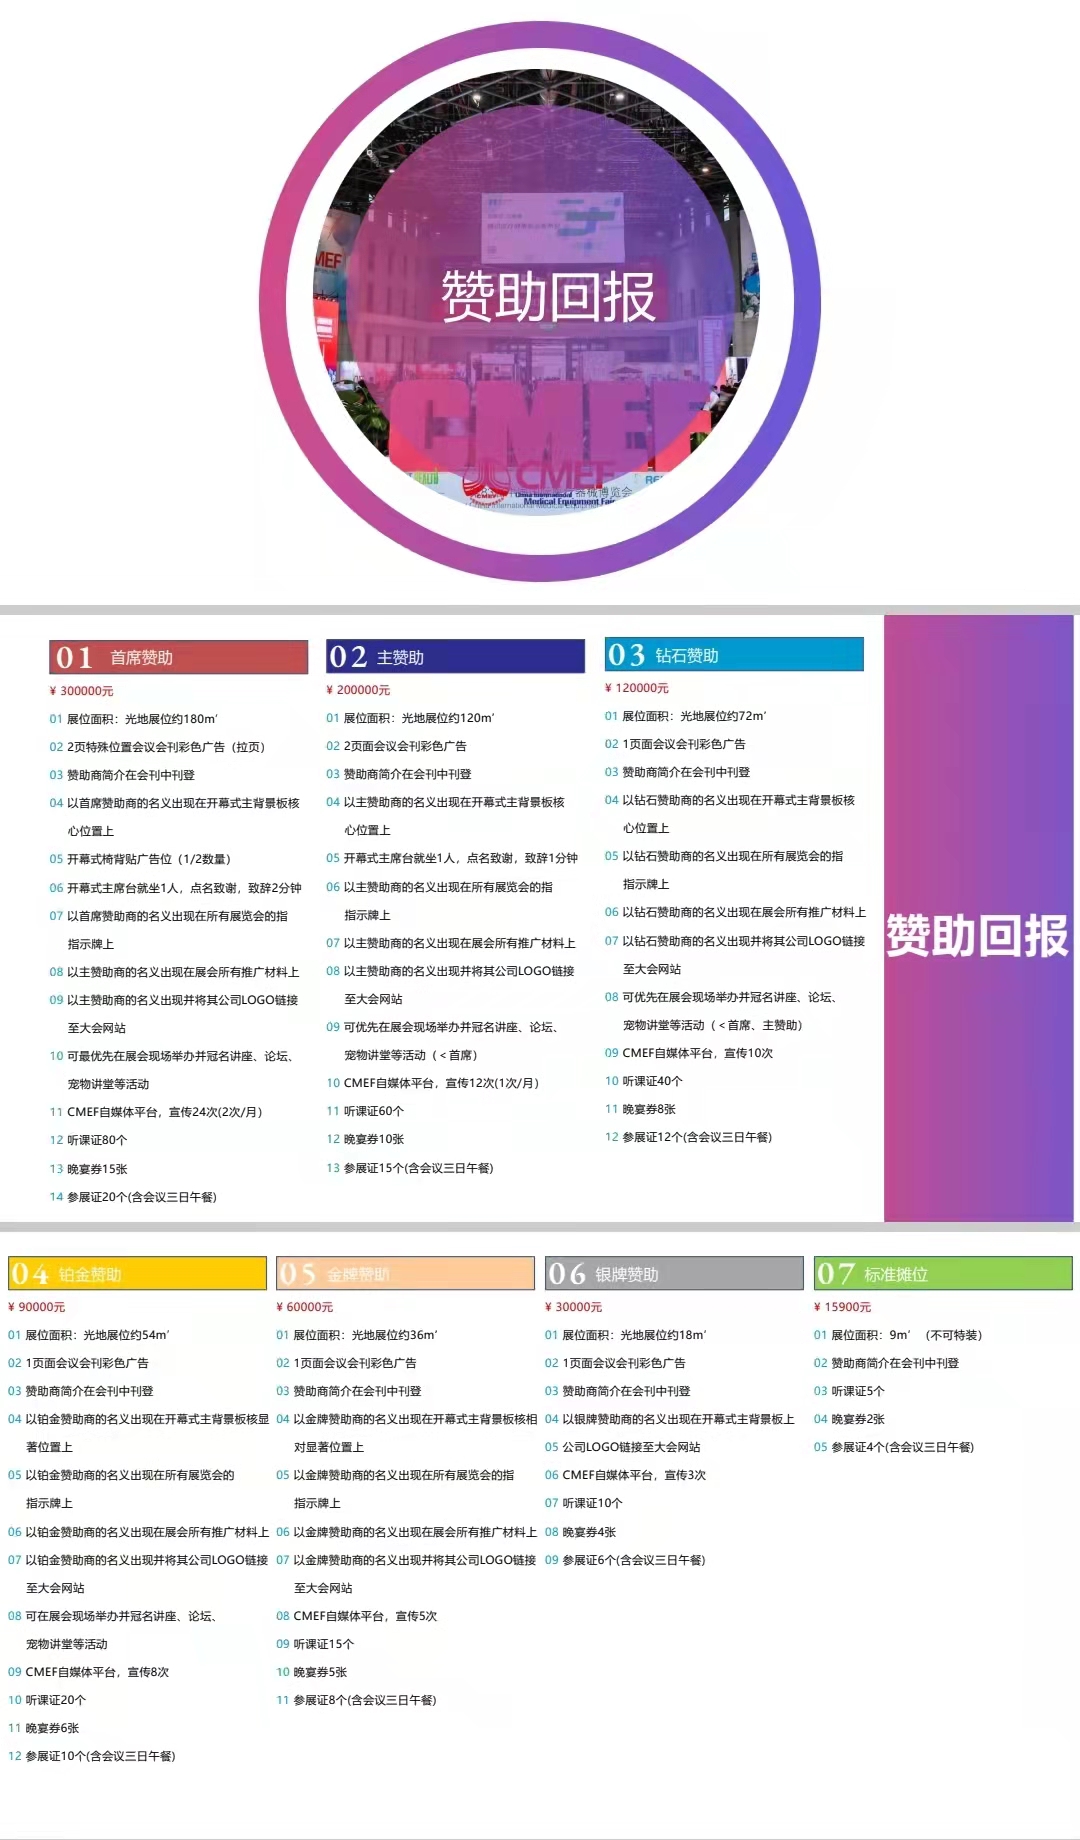 2022cmef宠博会&上海宠物用品展&宠物食品博览会(www.828i.com)